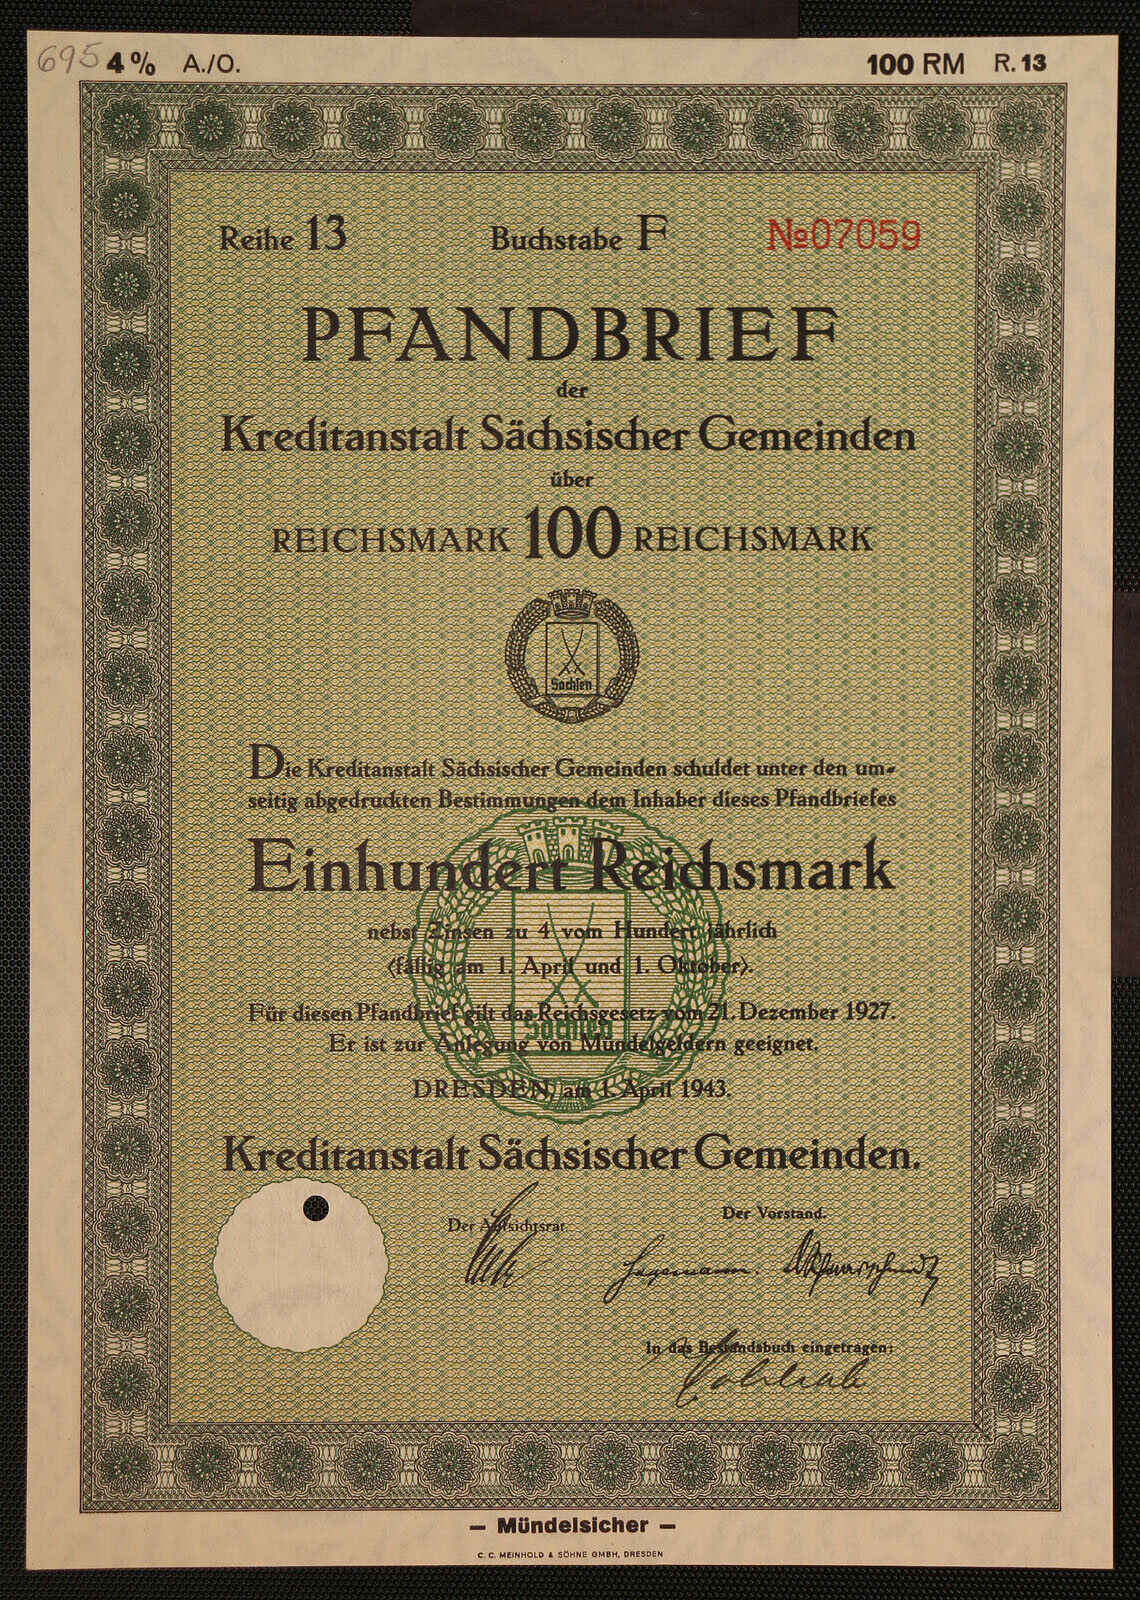 Germany 695/s-kreditanstalt Sächsischer Gemeinden Dresden,4%pfandbrief1943 100rm